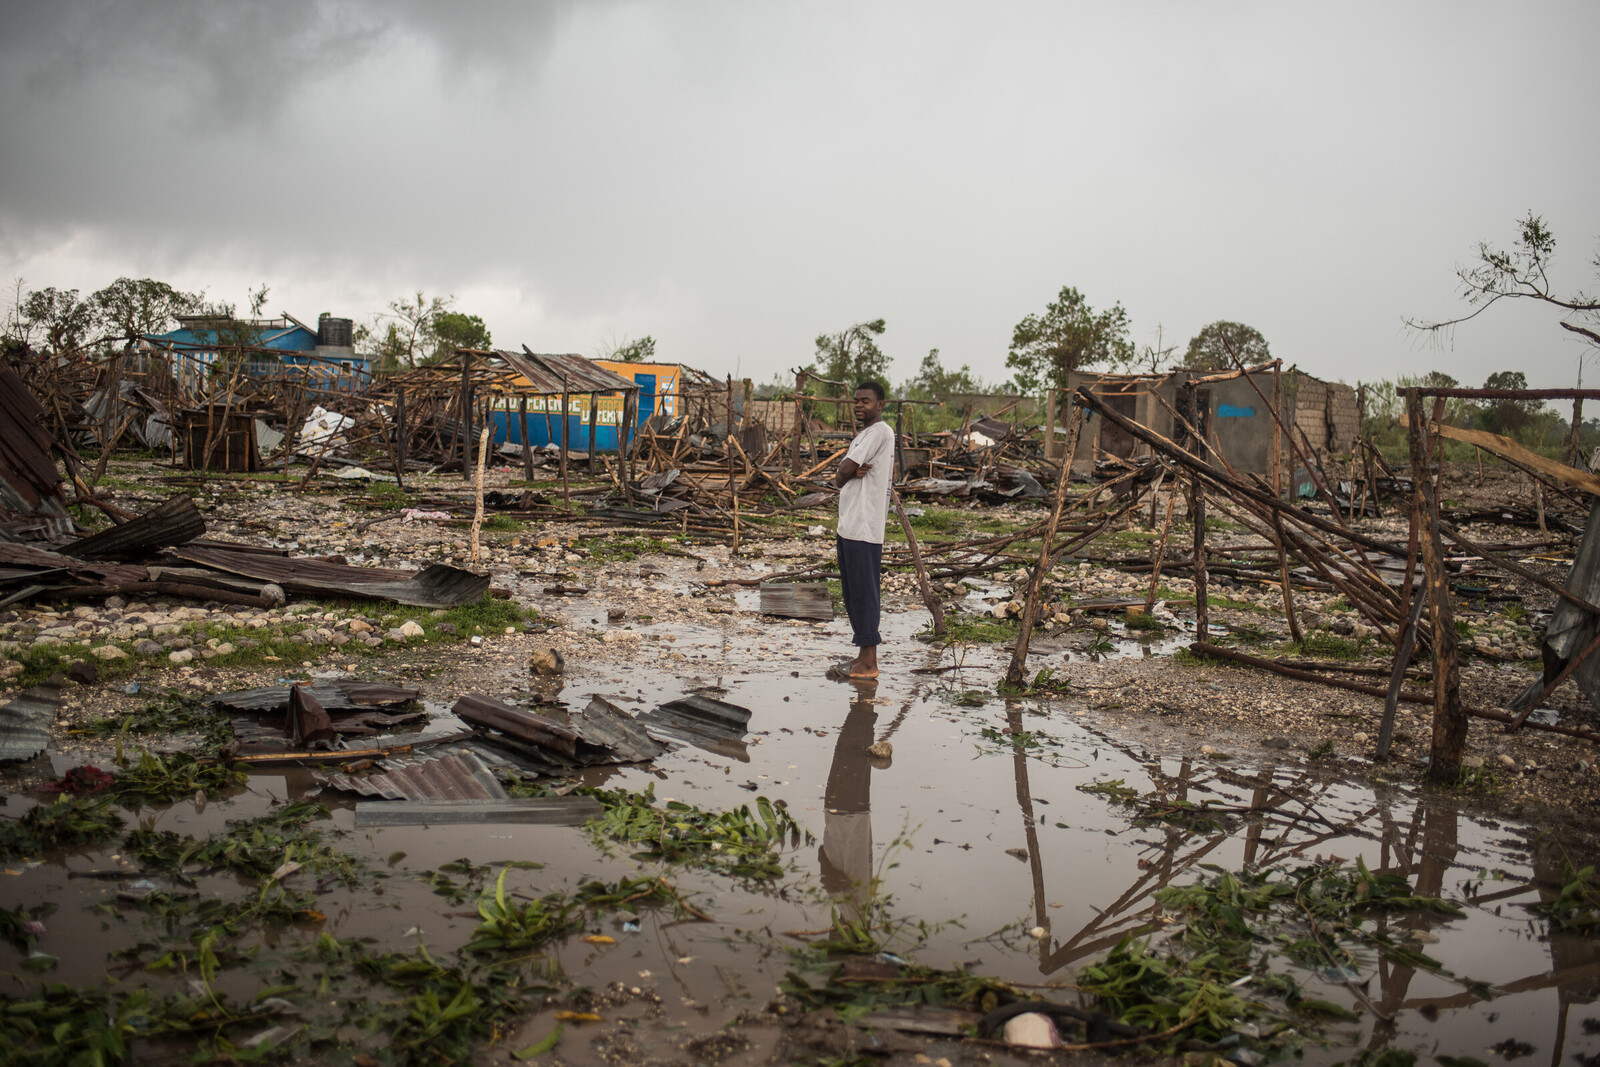 Viele Menschen auf Haiti leben von der Landwirtschaft. Hurrikan Matthew zerstörte die Plantagen. Viele Menschen haben alles verloren.